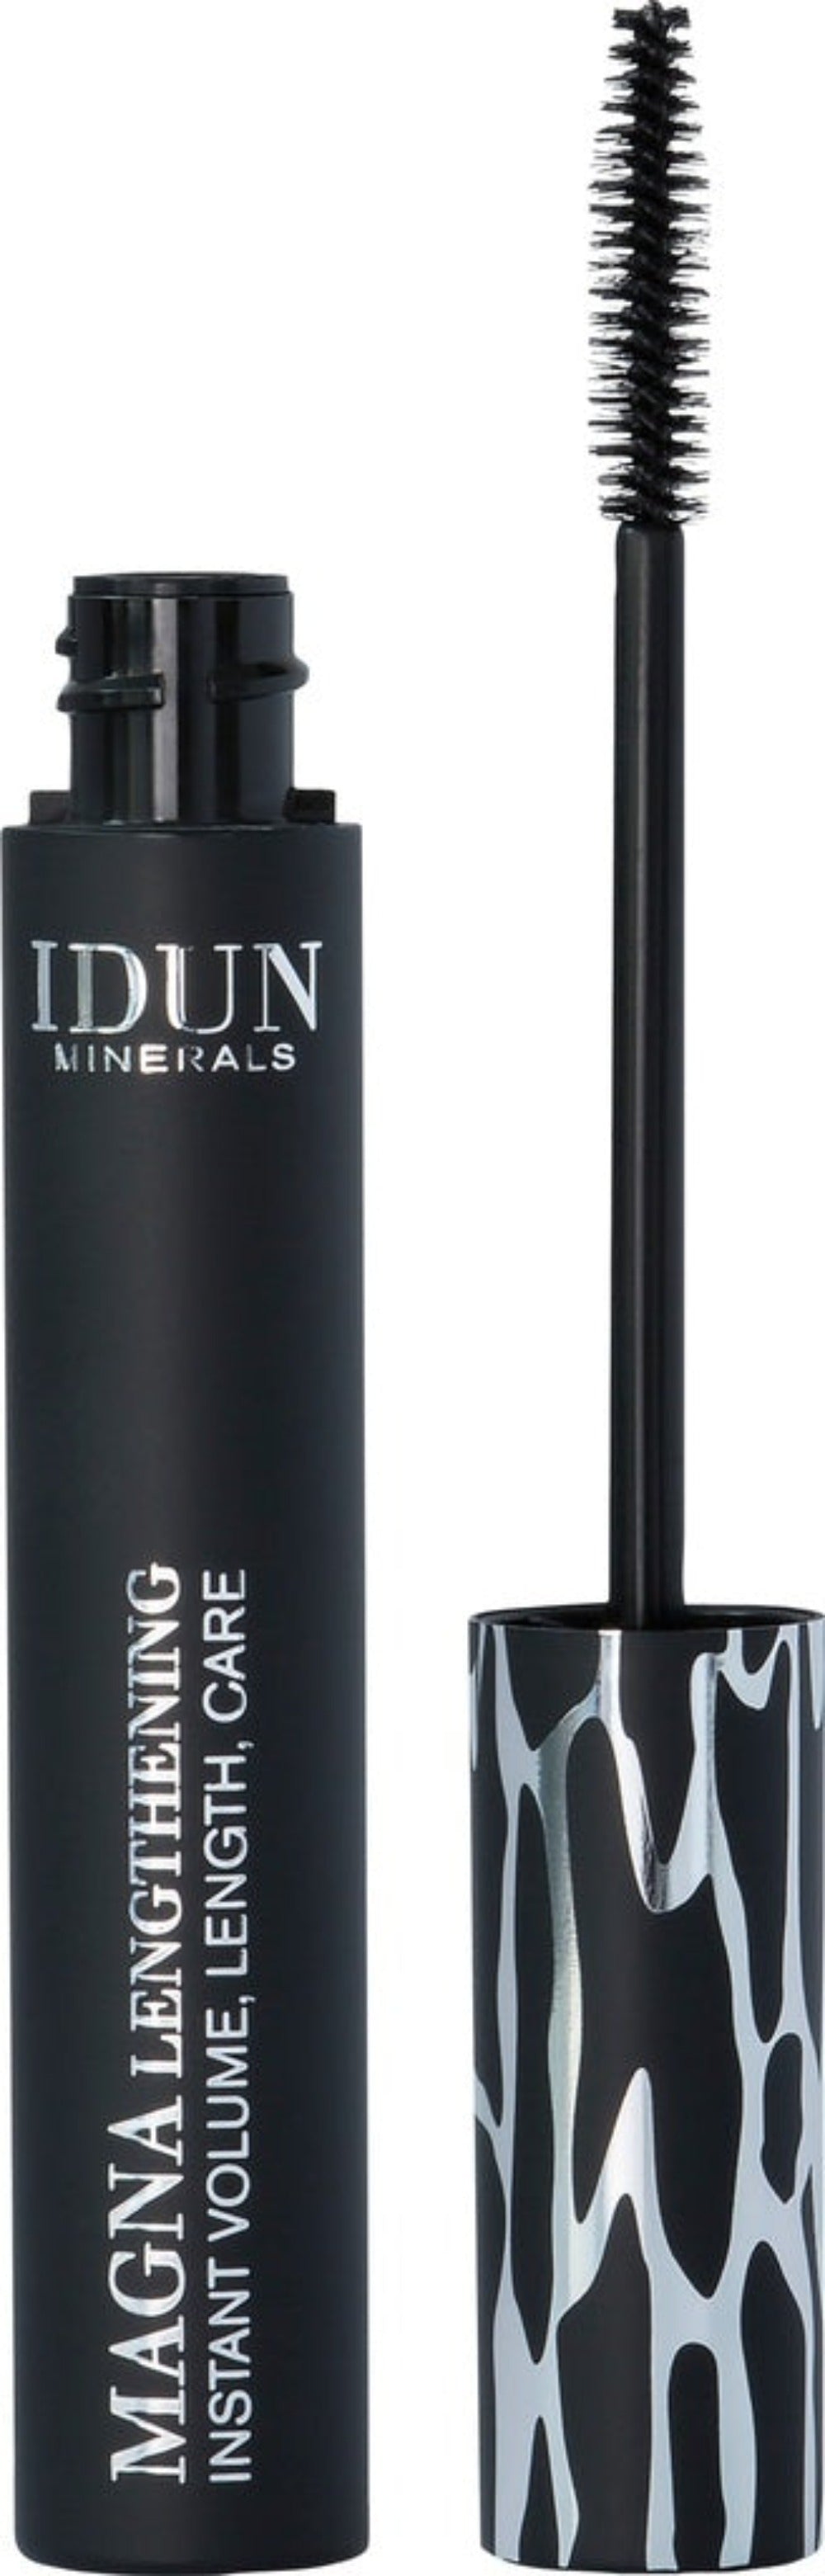 IDUN MINERALS -  Magna Legthening Mascara - 13 ml